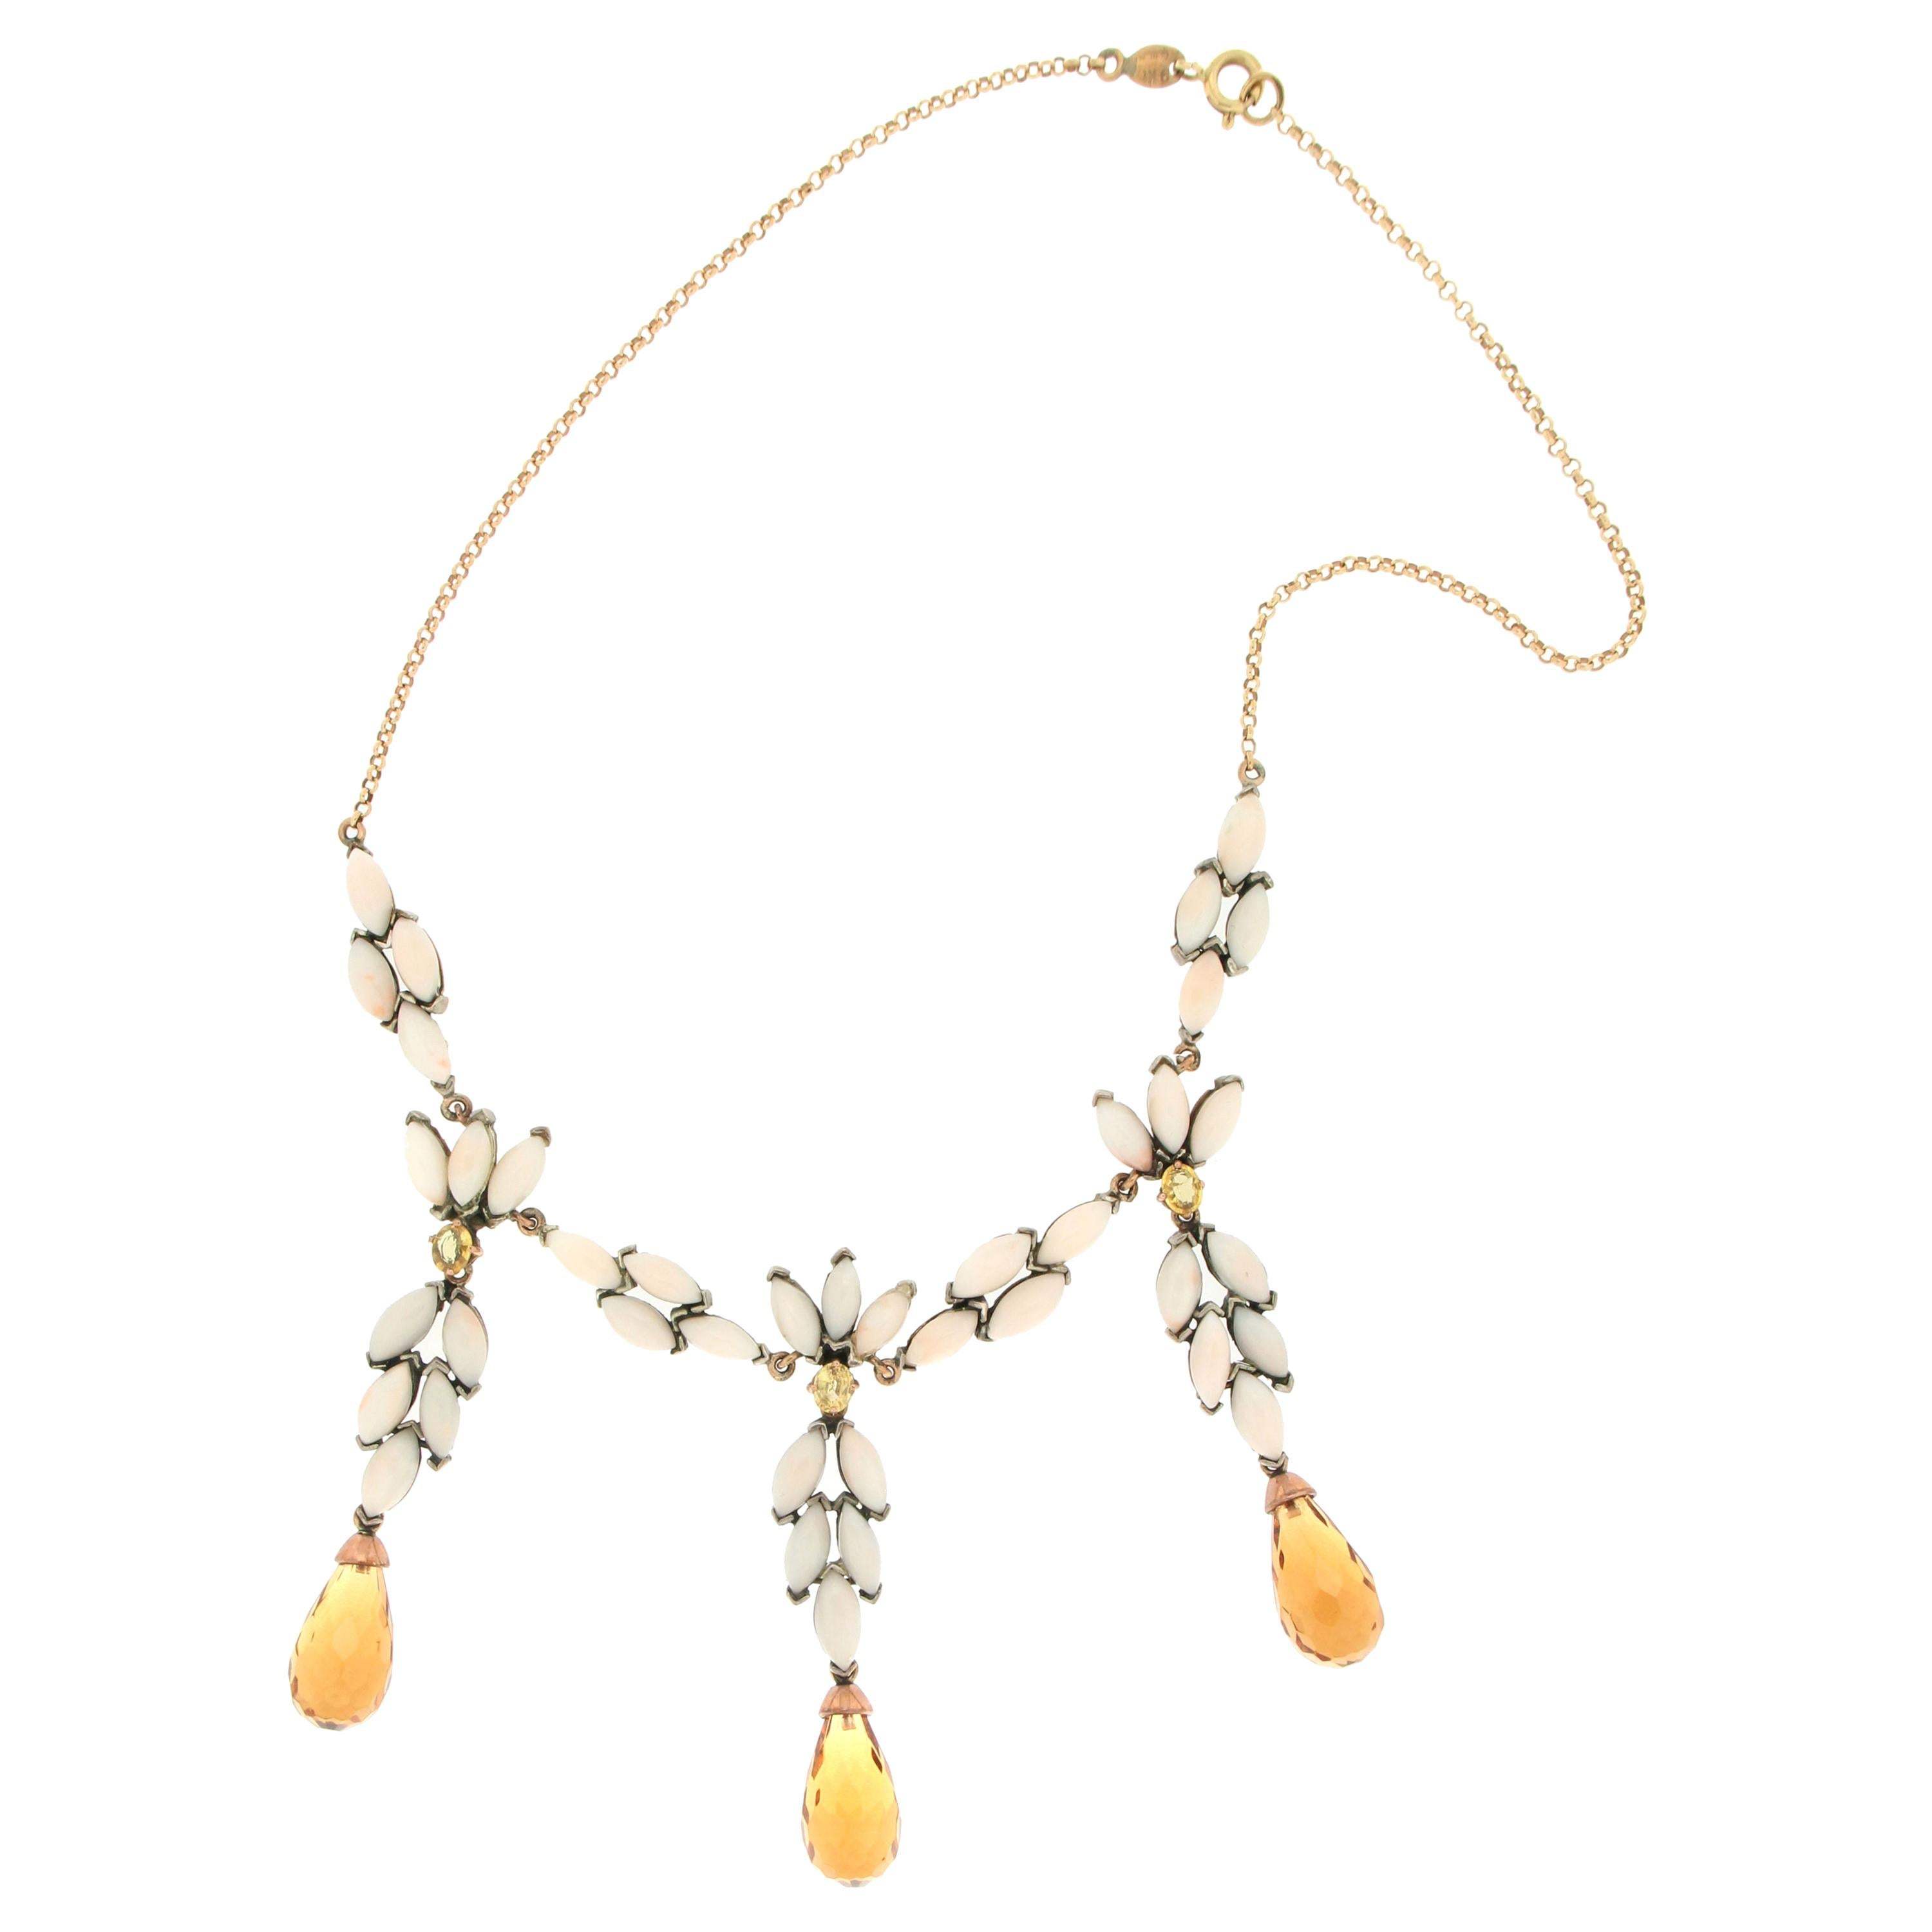 Handgefertigte Halskette aus 9 Karat Gelbgold mit Saphiren, Korallen und Citrin